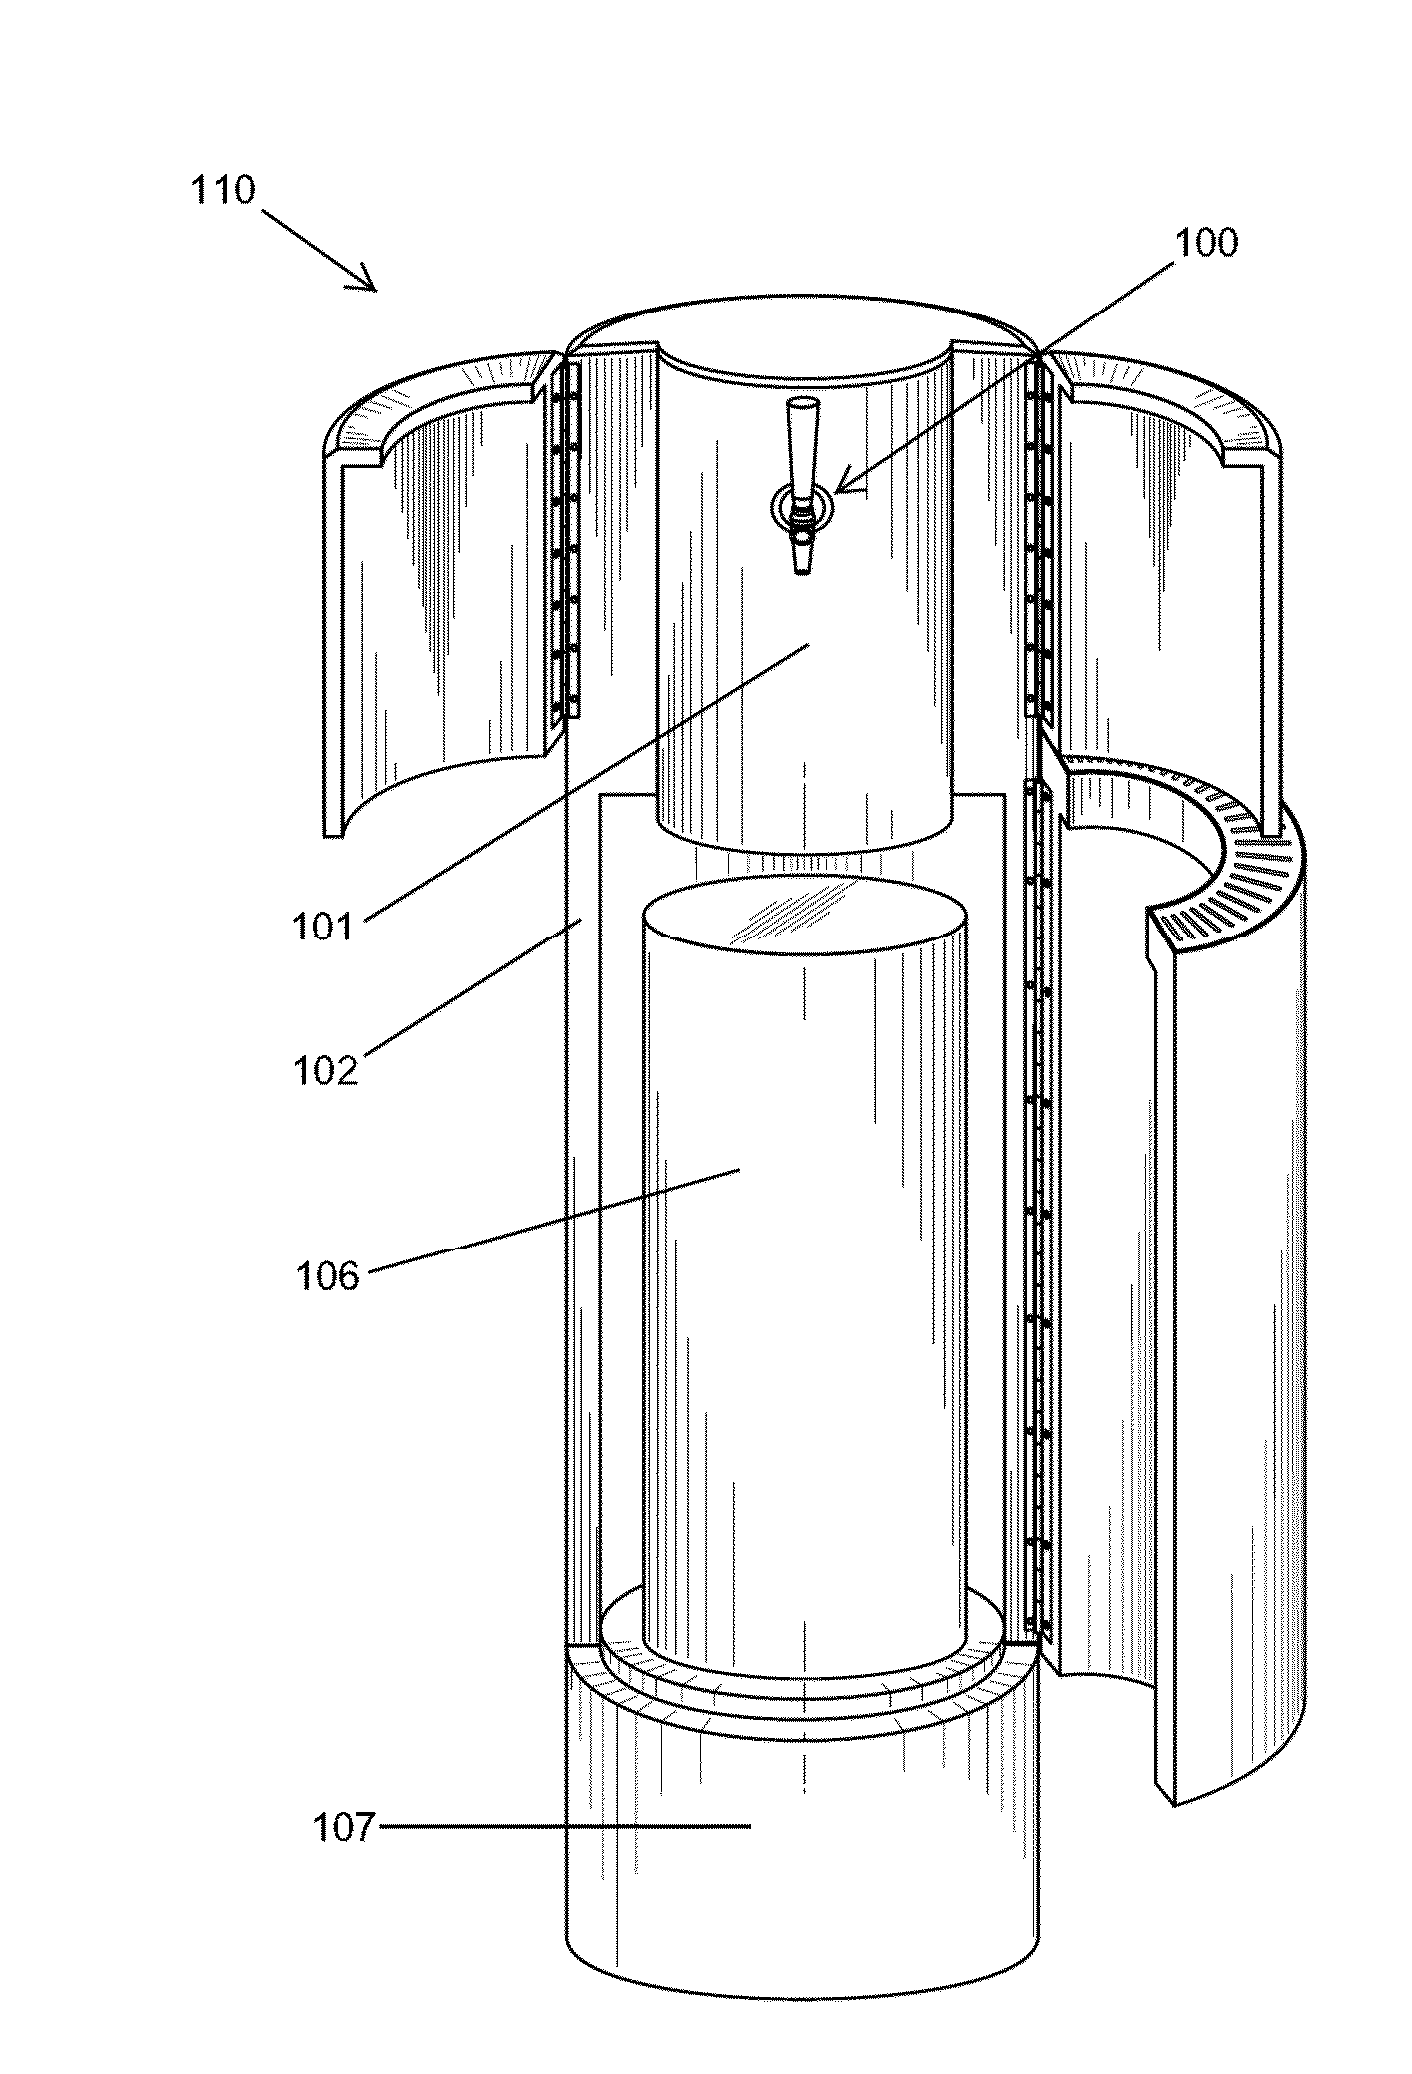 Versatile and Aesthetically Refined Keg Dispenser